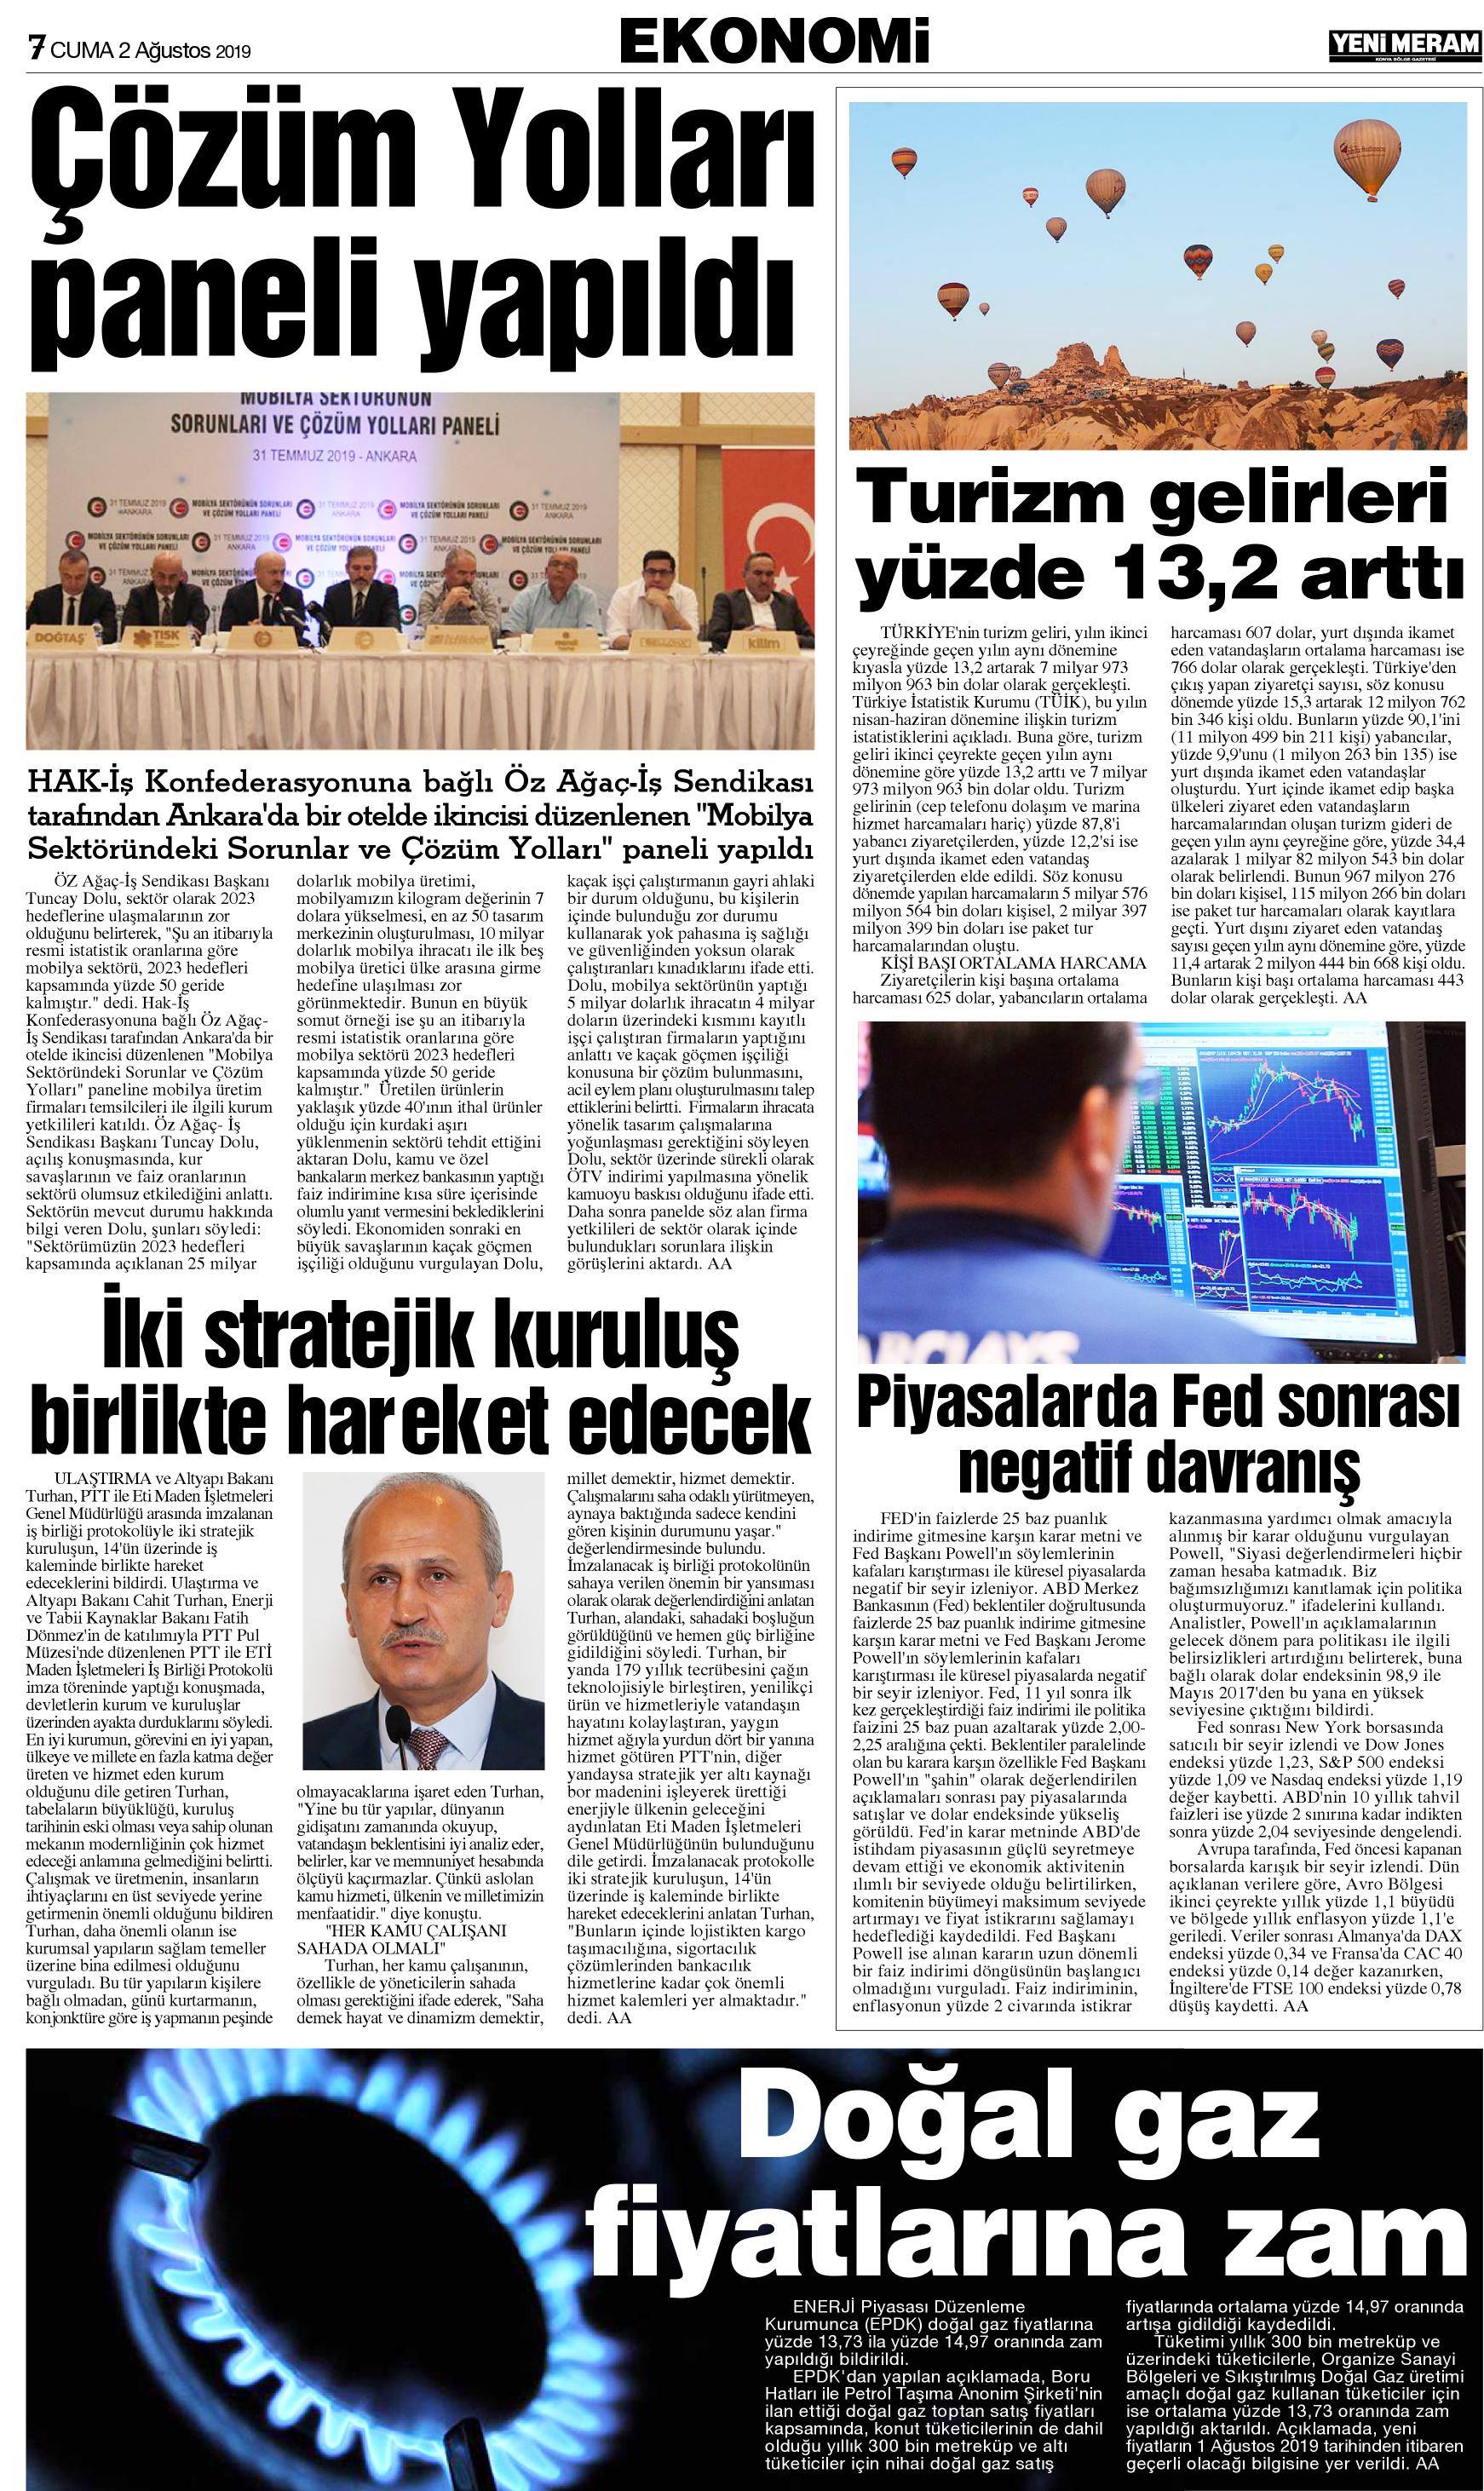 2 Ağustos 2019 Yeni Meram Gazetesi